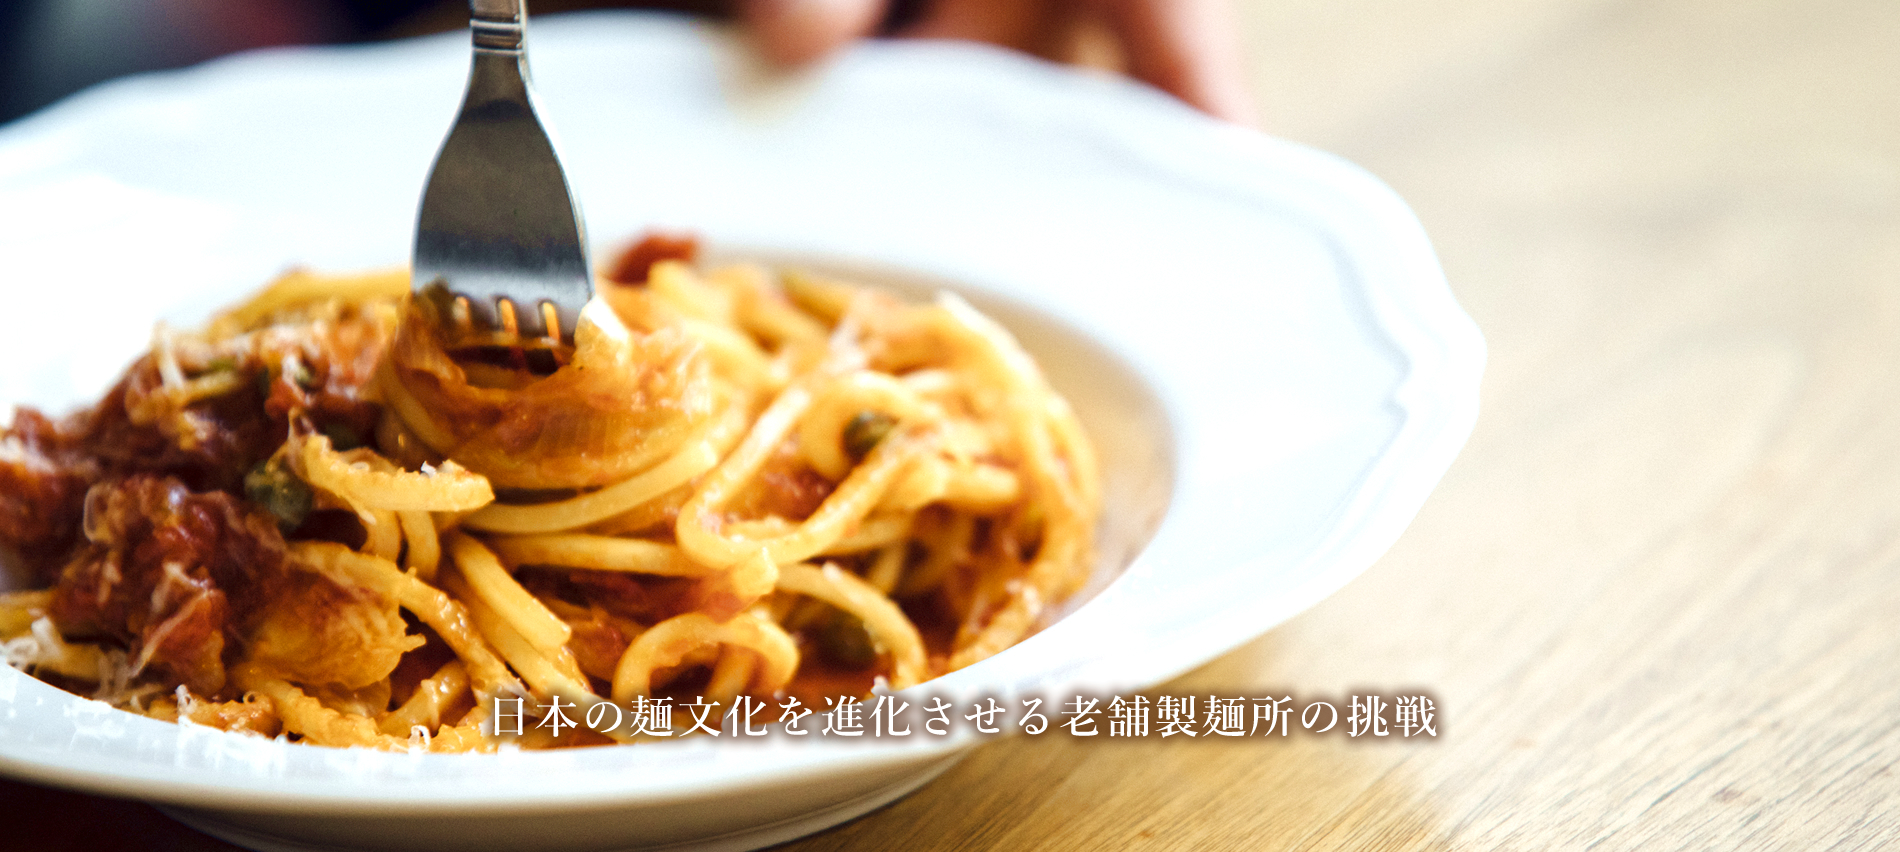 日本の麺文化を進化させる老舗性麺所の挑戦。